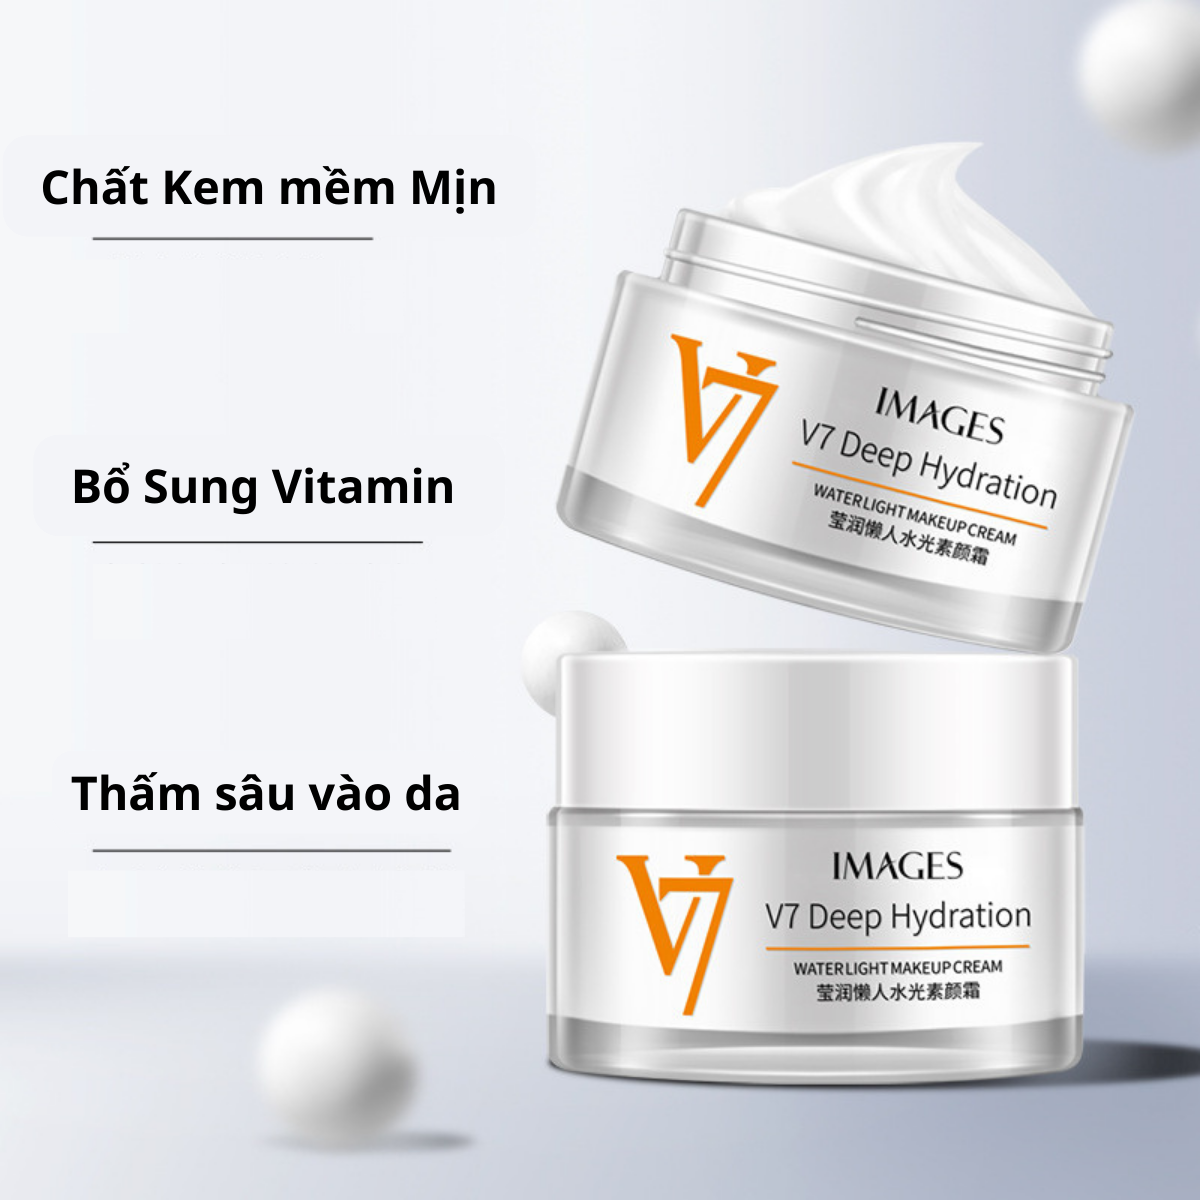 Kem dưỡng ẩm dưỡng trắng bật tông V7 dành cho da mặt hương thơm tự nhiên dịu nhẹ phù hợp với mọi loại da 50g